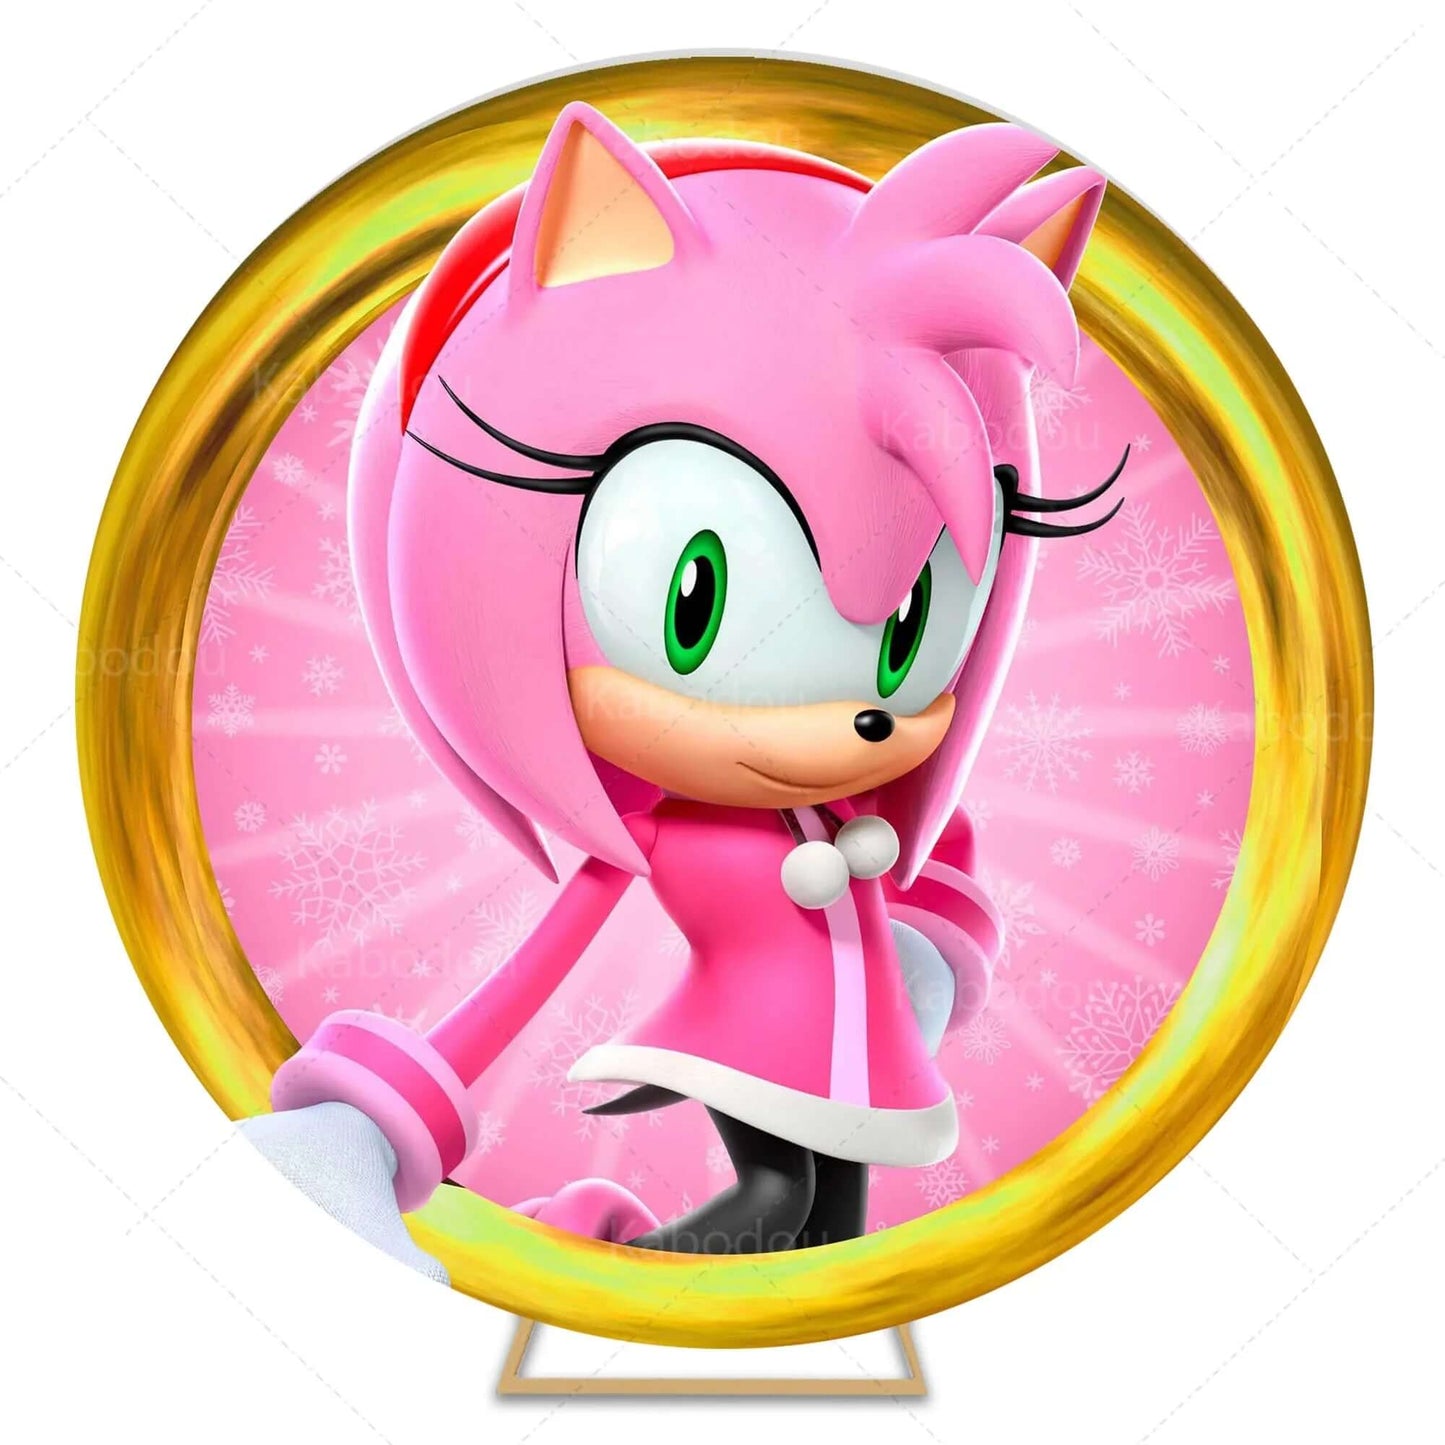 Sonic the Hedgehog rózsaszín háttér a lányok születésnapi partijának dekorációjához